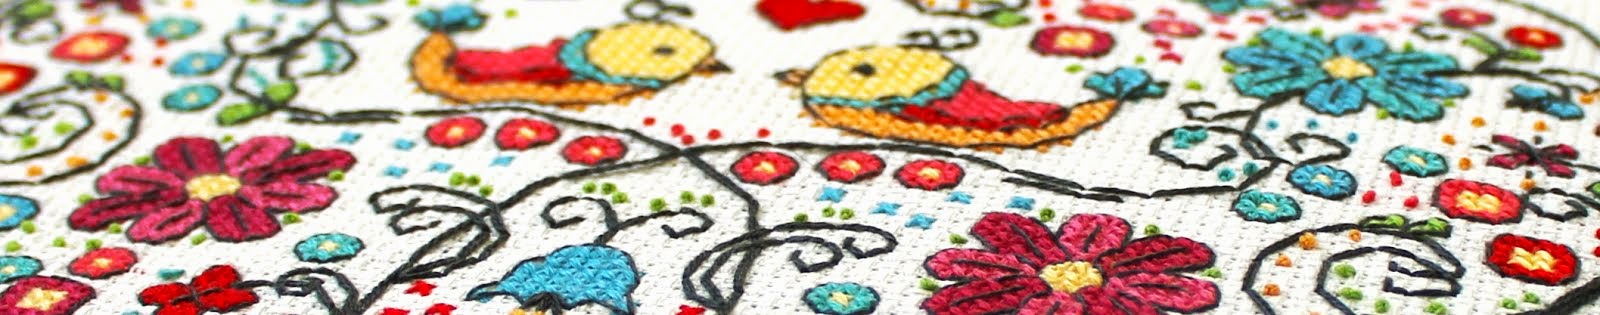 Cross stitch patterns